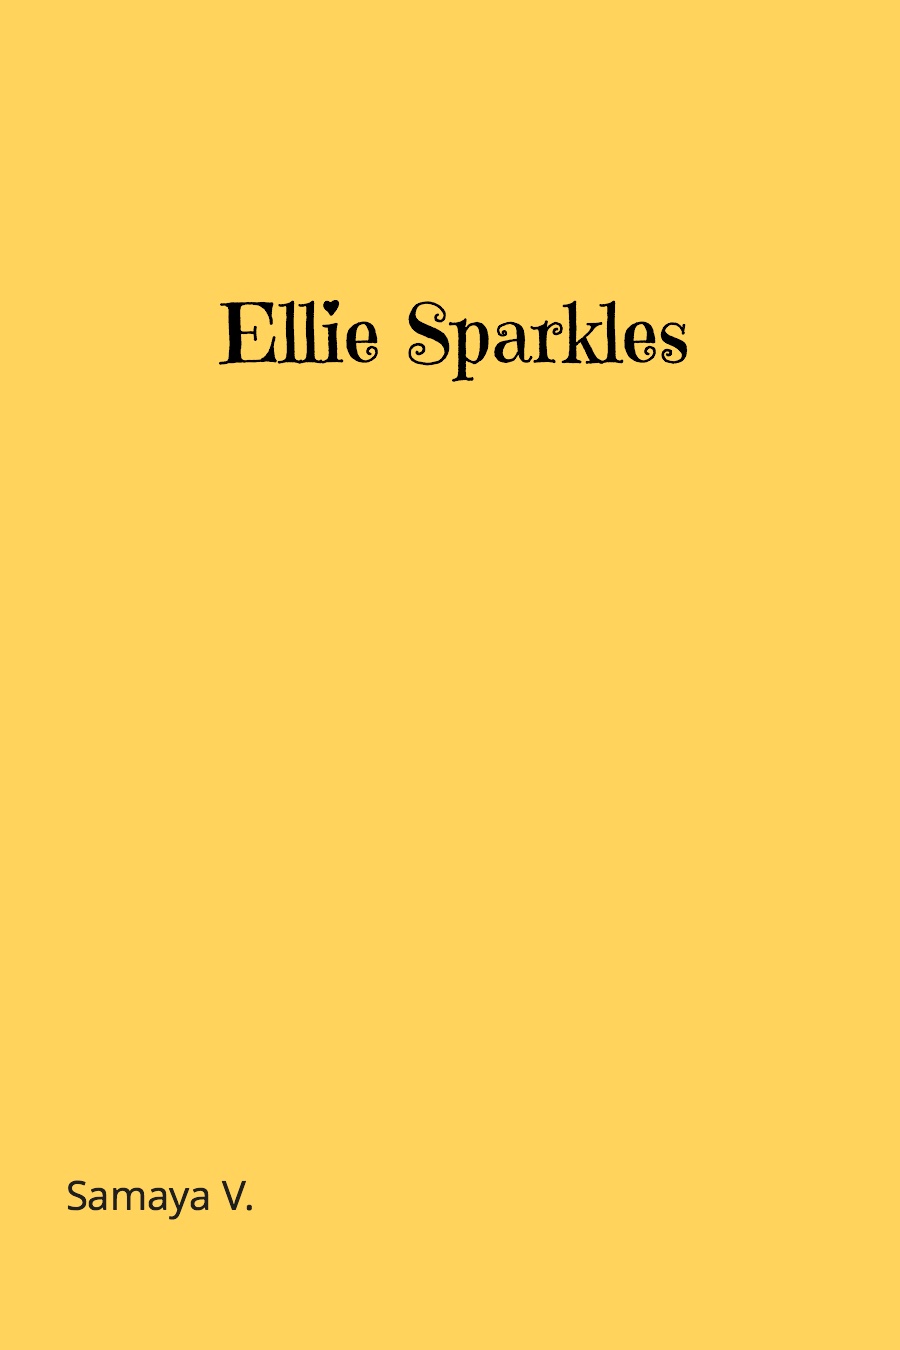 Ellie Sparkles by Samaya V